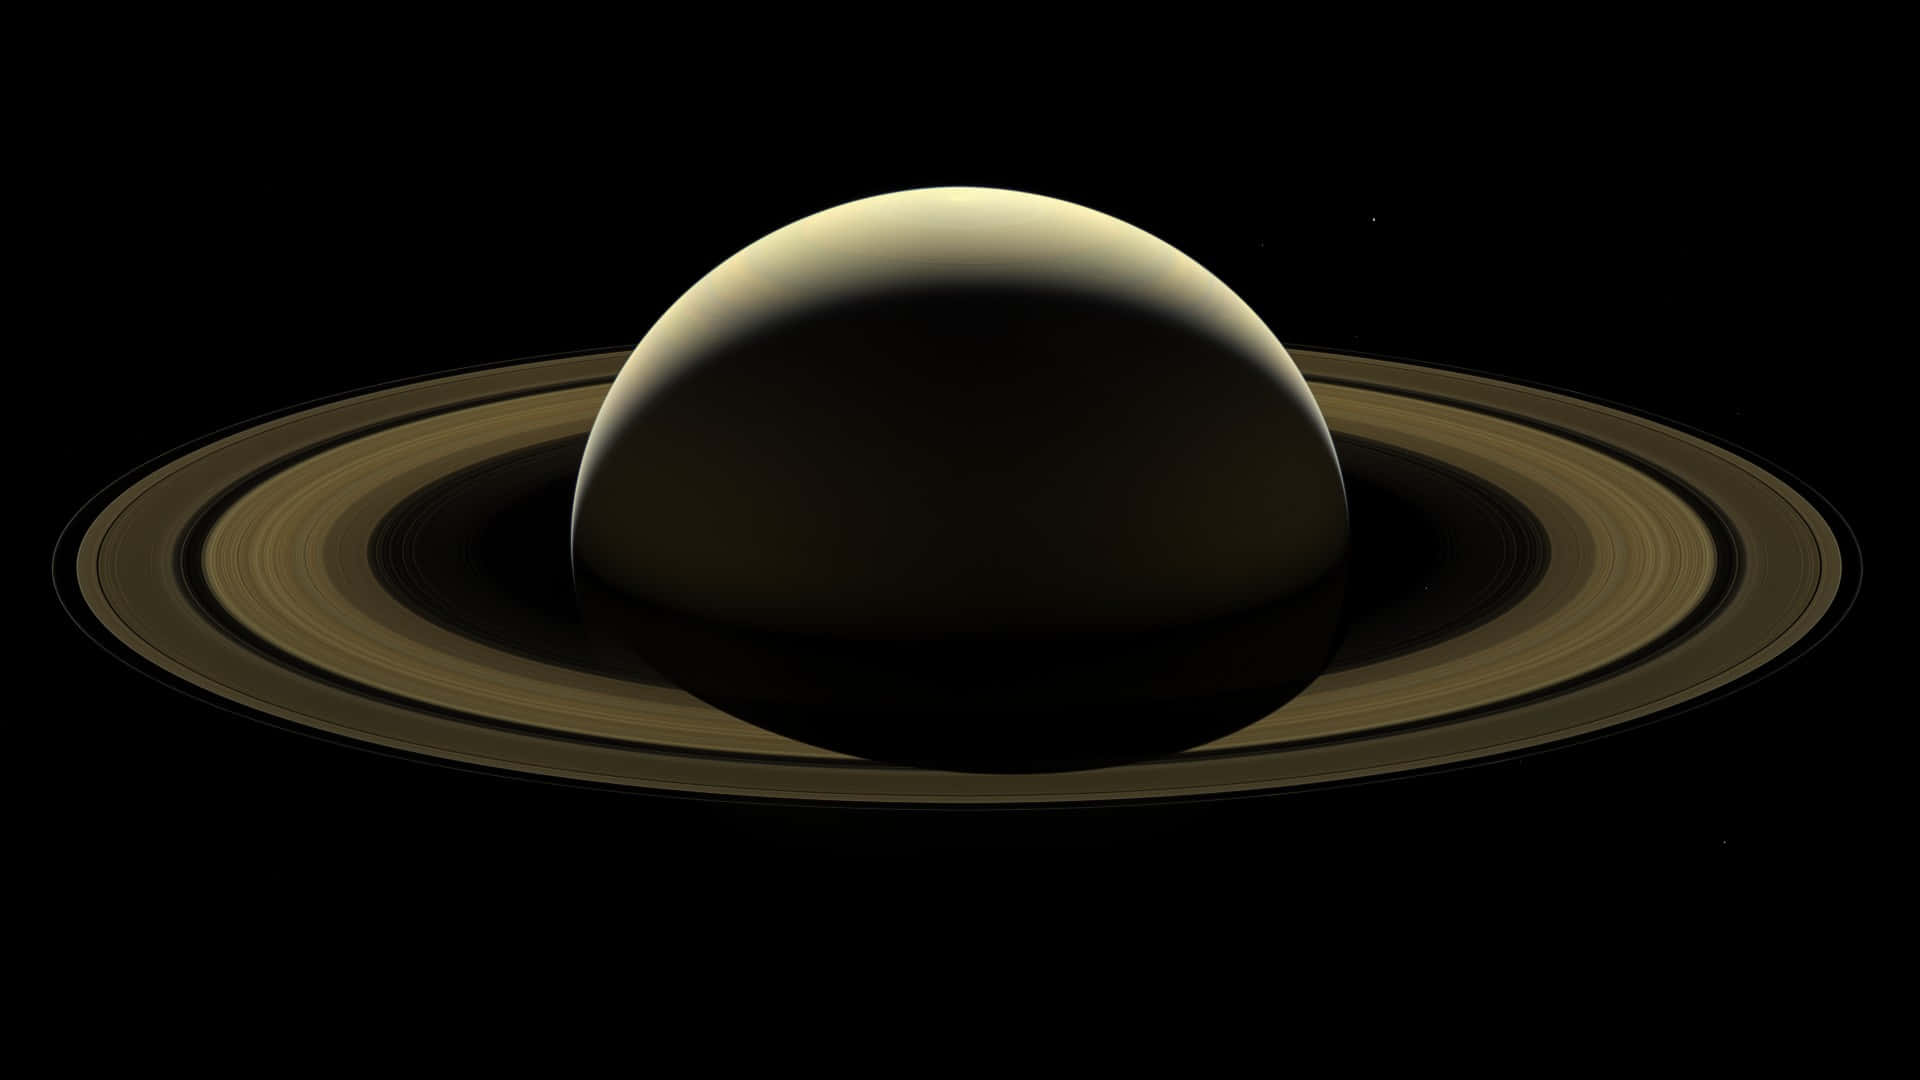 Maravíllatecon La Majestuosidad De Saturno